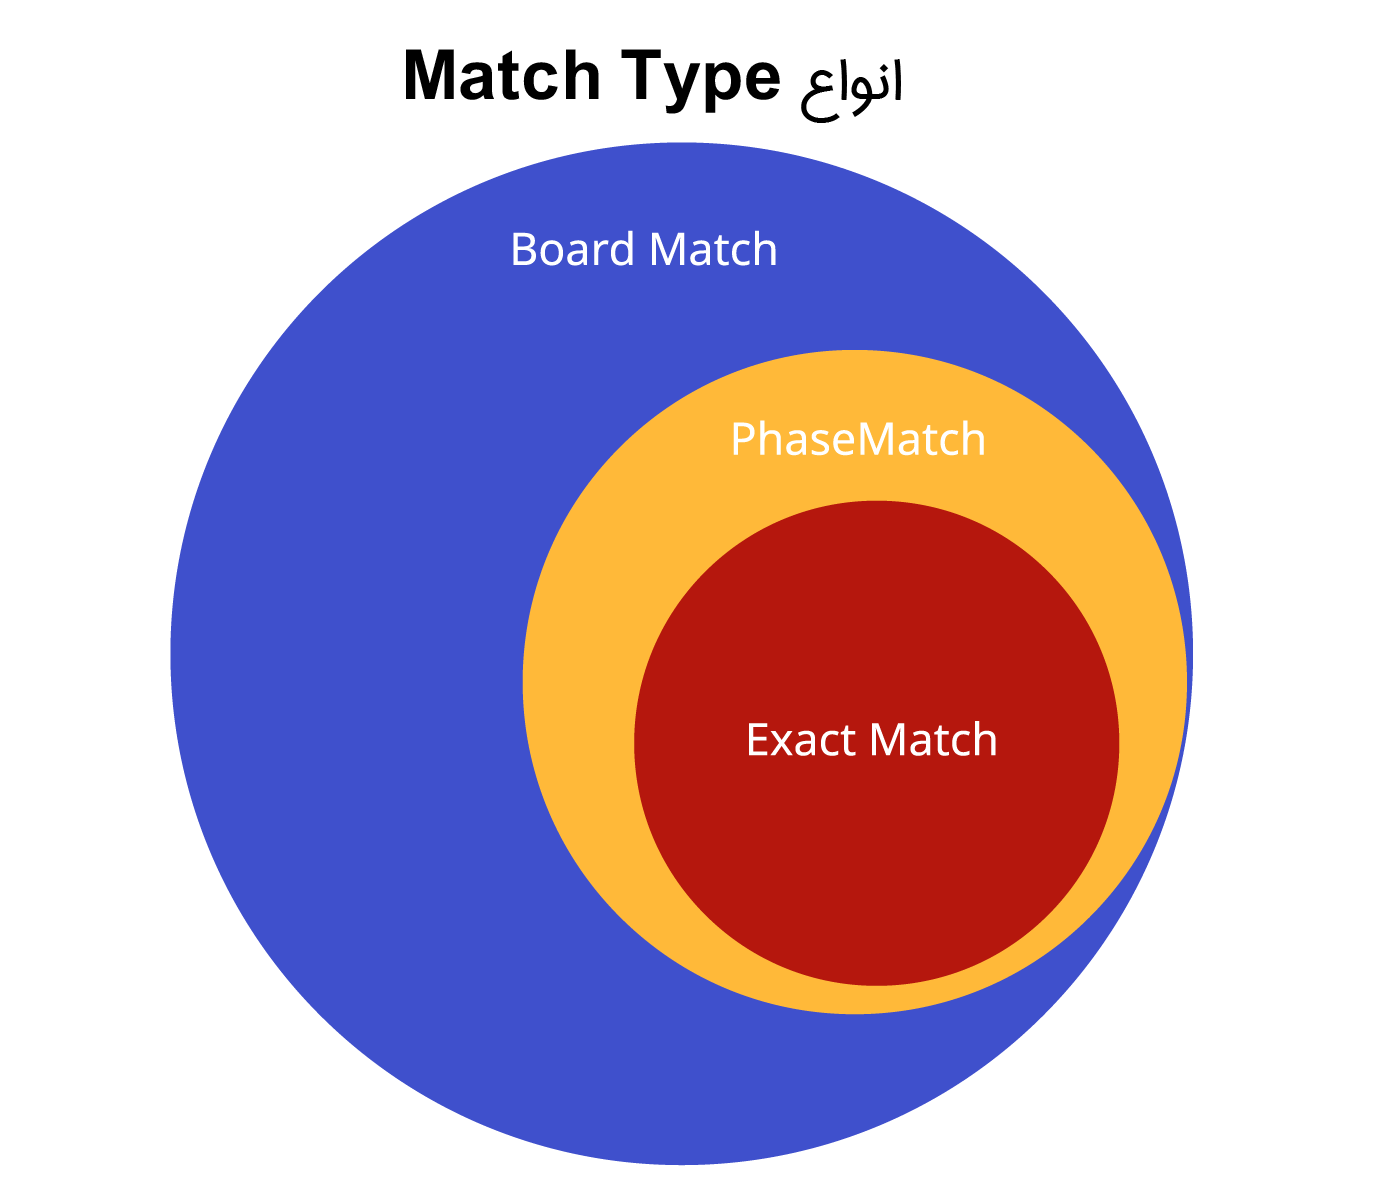 انواع Match Type​